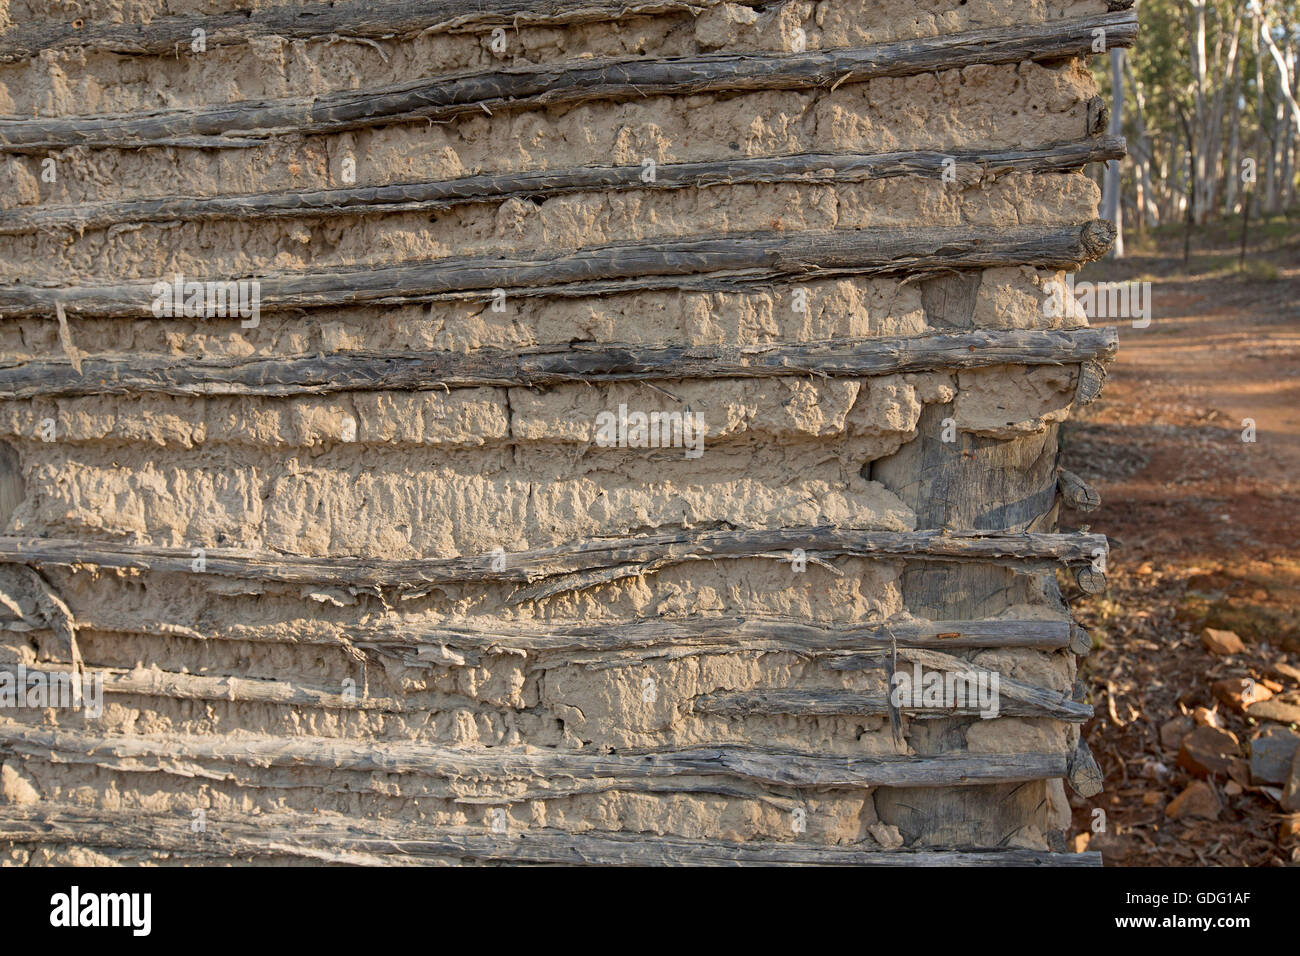 La sección de la pared del edificio hecho con acacia & daub mostrando un simple método barato de construcción con materiales naturales Foto de stock